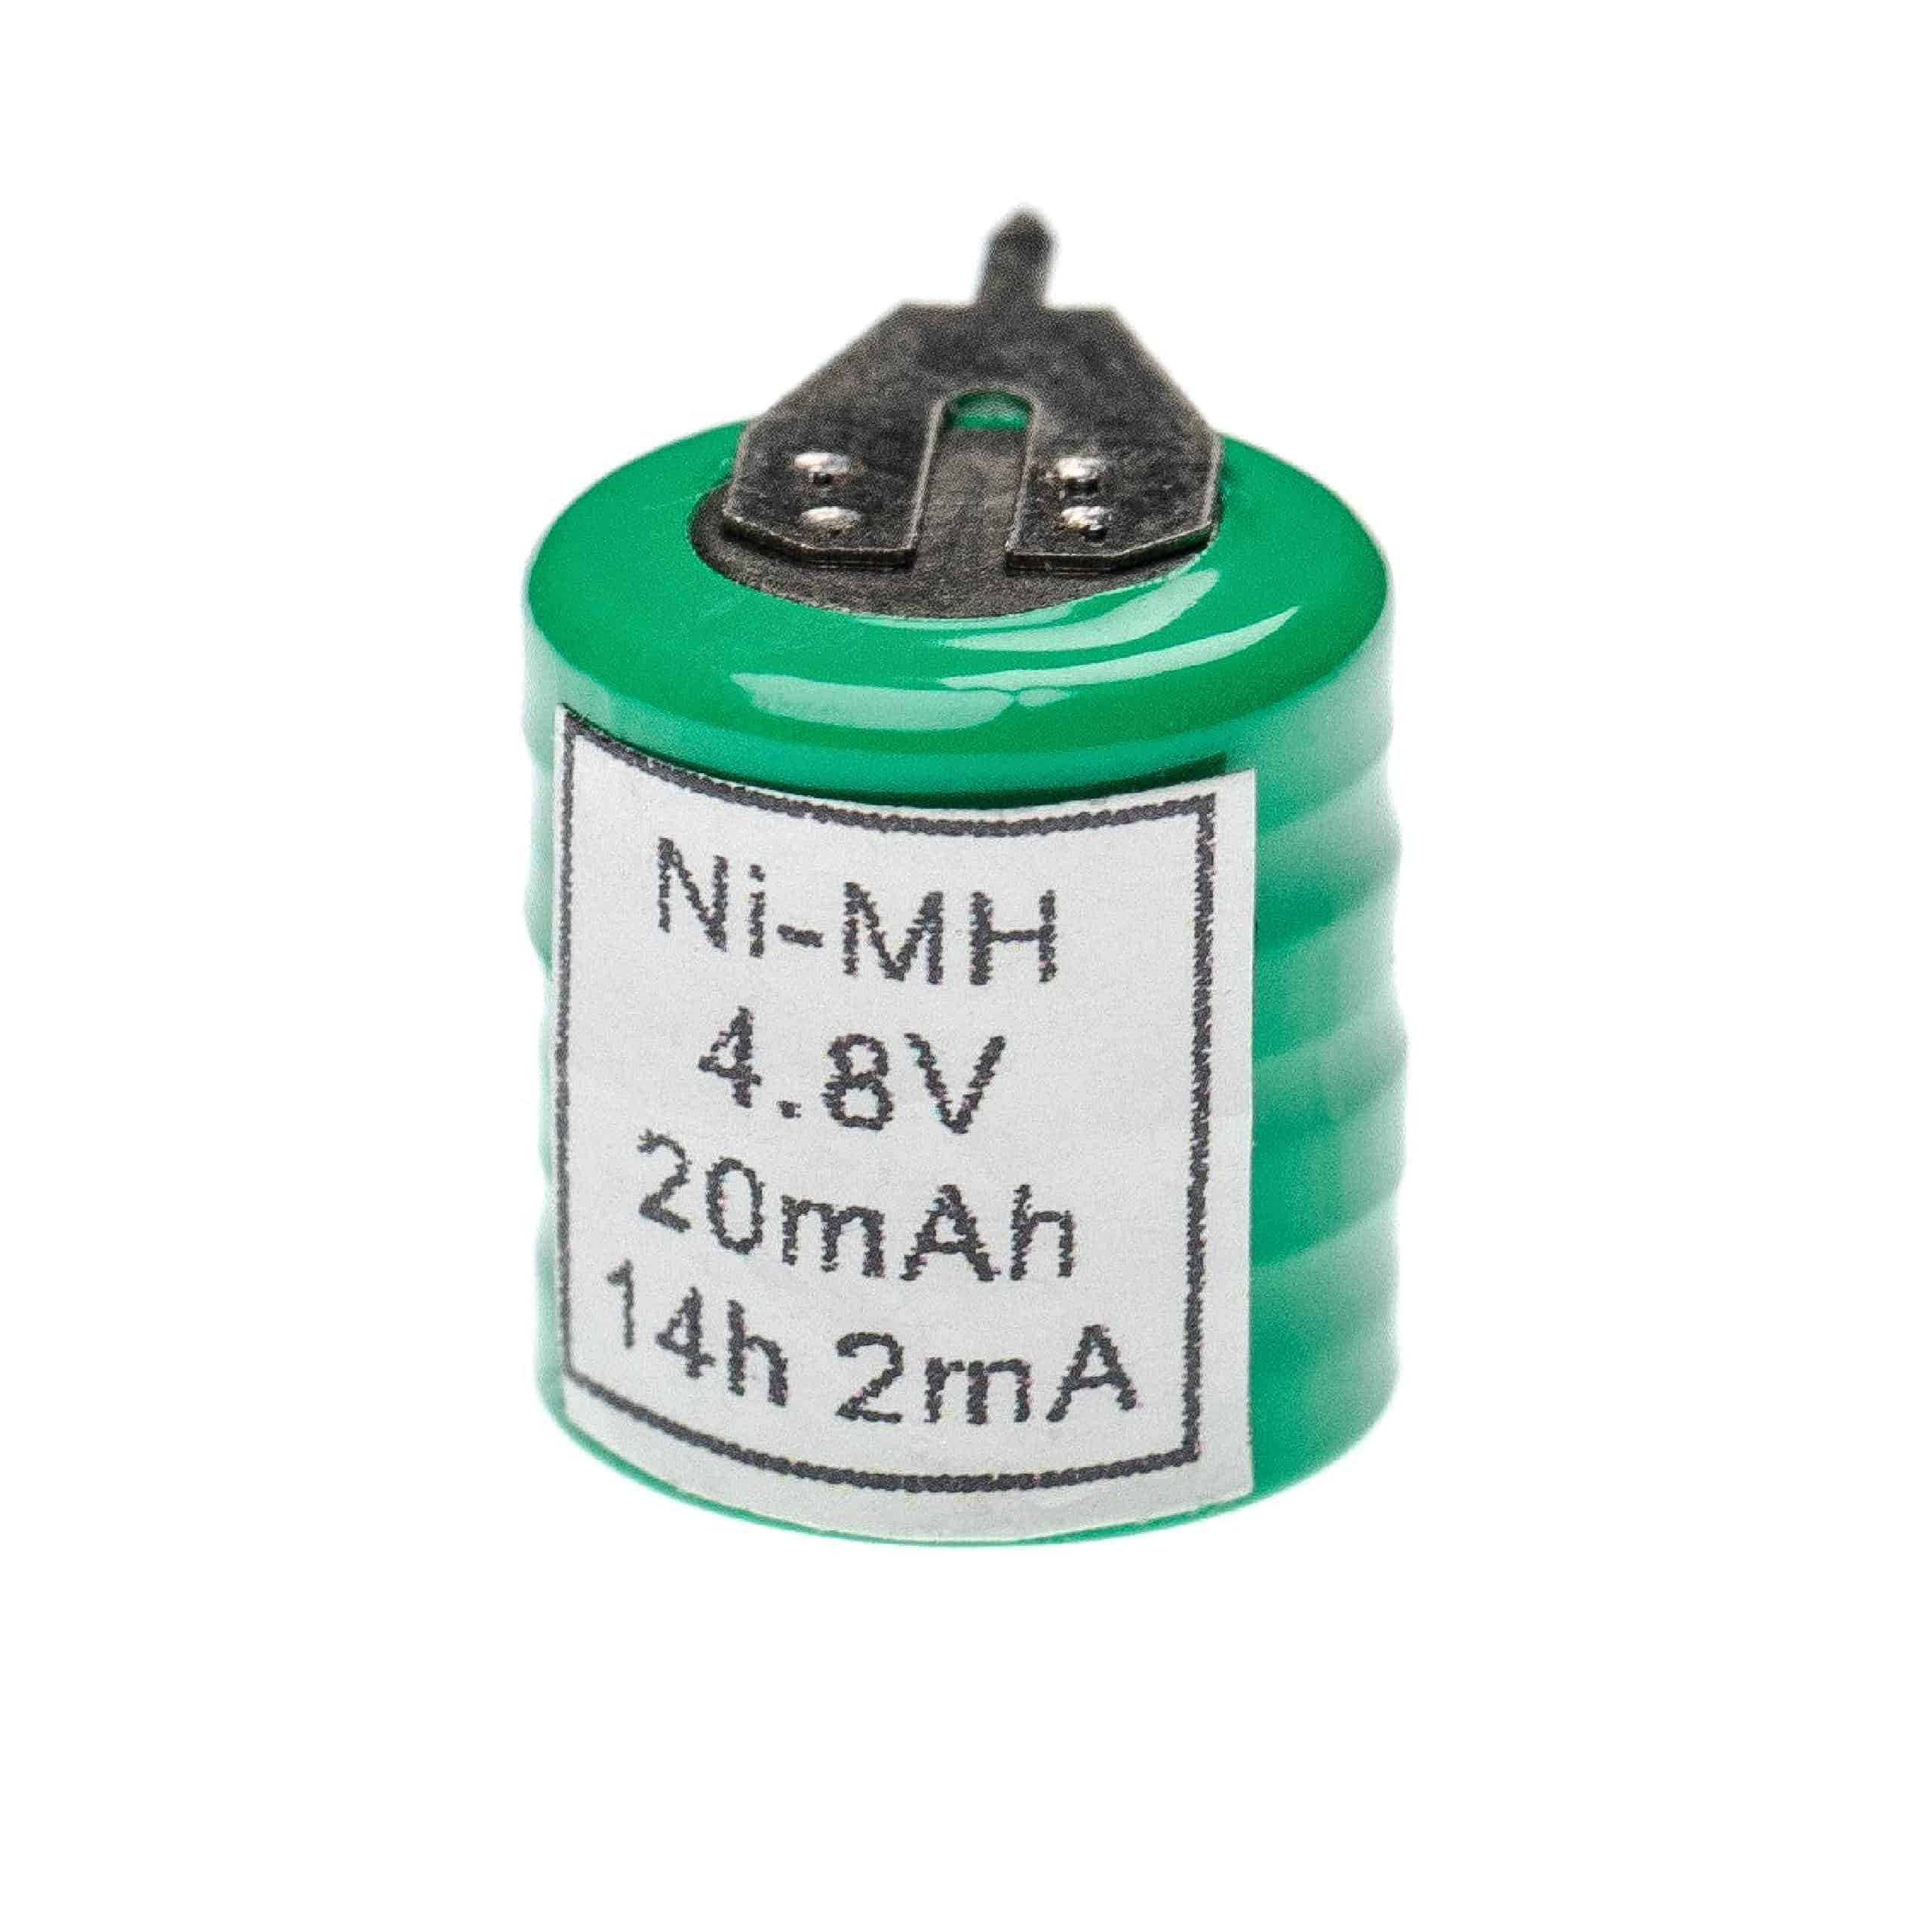 Batteria a bottone (4x cella) tipo 4/V15H 2 pin sostituisce 4/V15H per modellismo, luci solari ecc. 